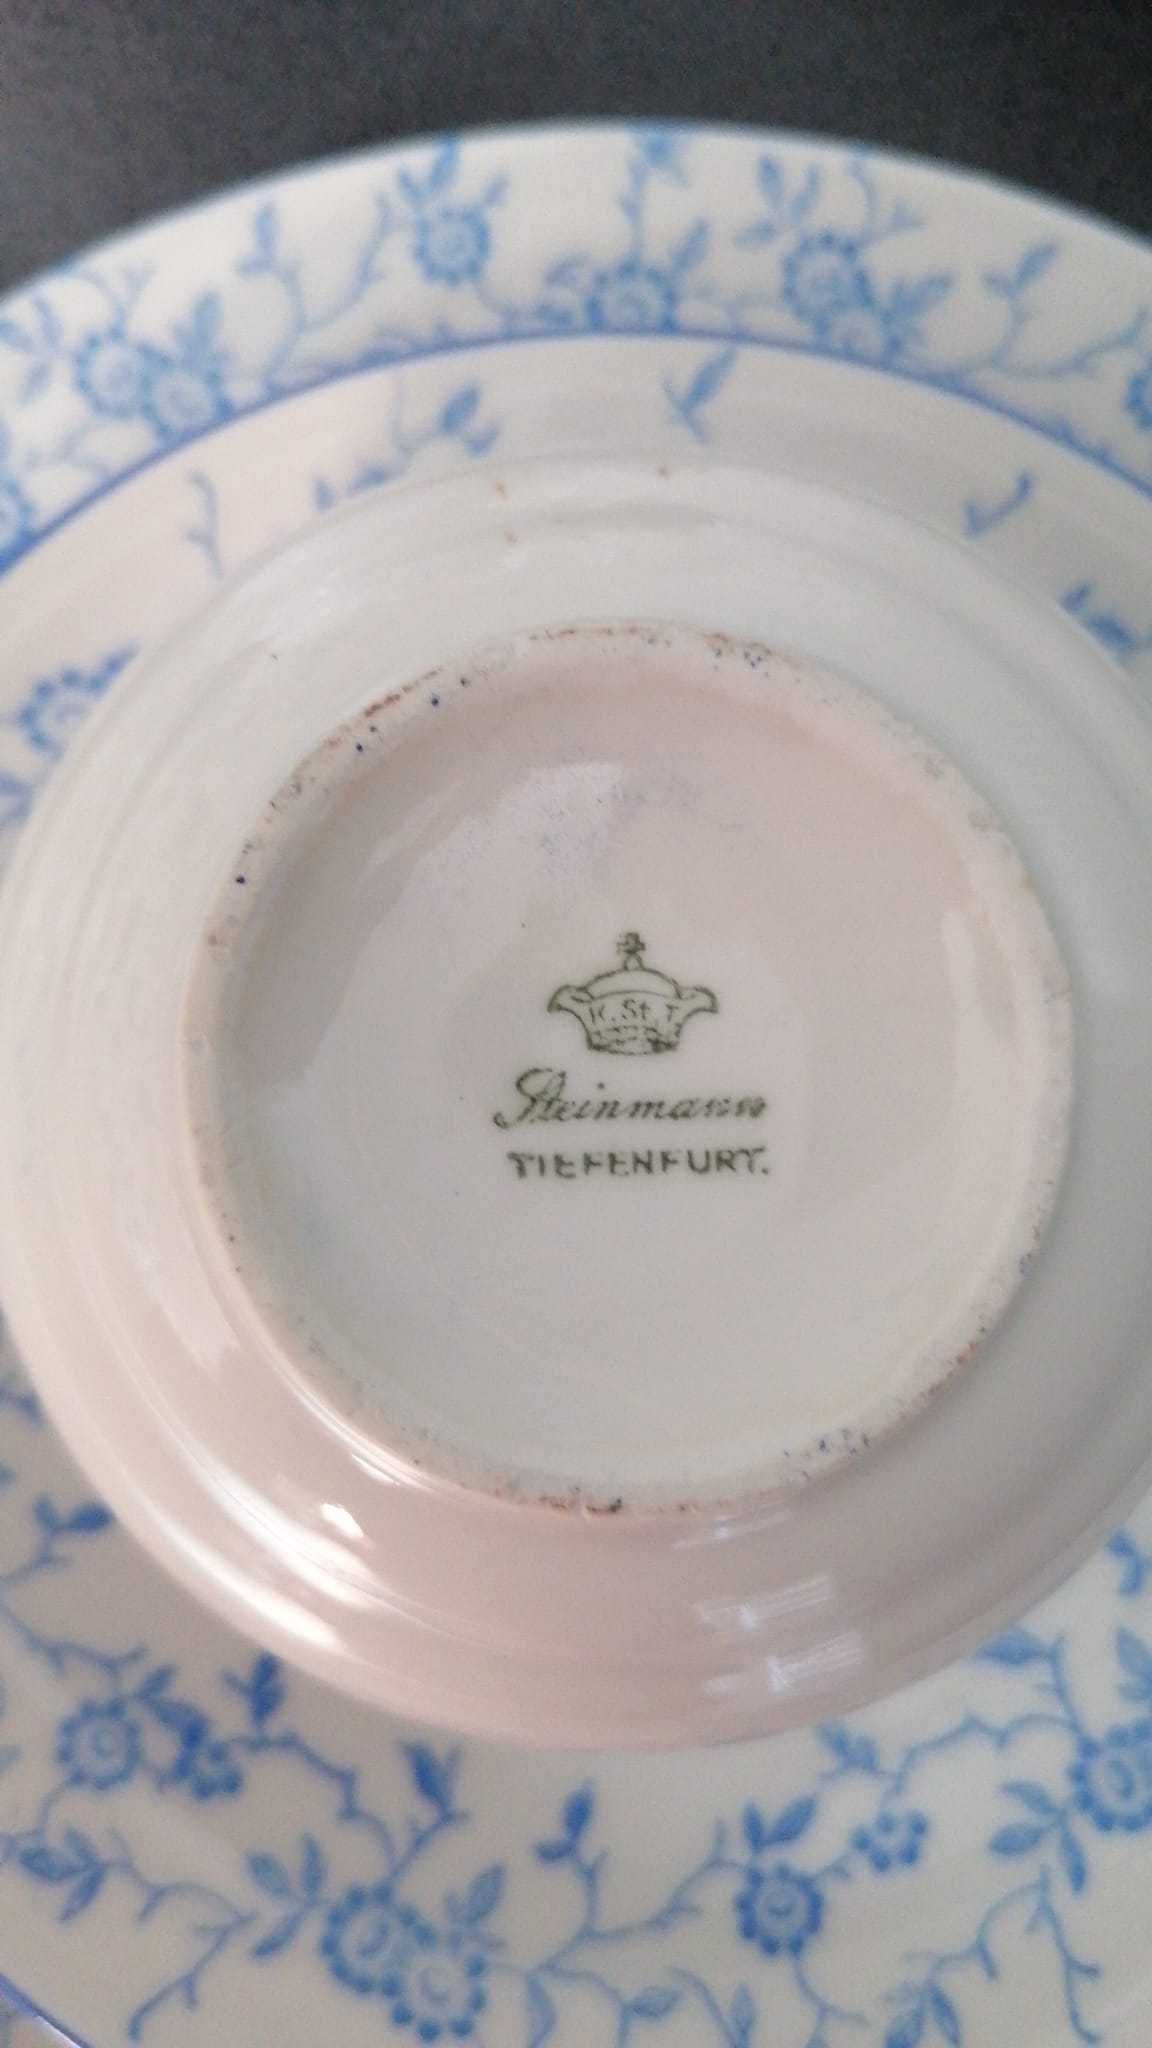 Przedwojenna porcelana śląska z Tiefenfurt/Parowa Steimann